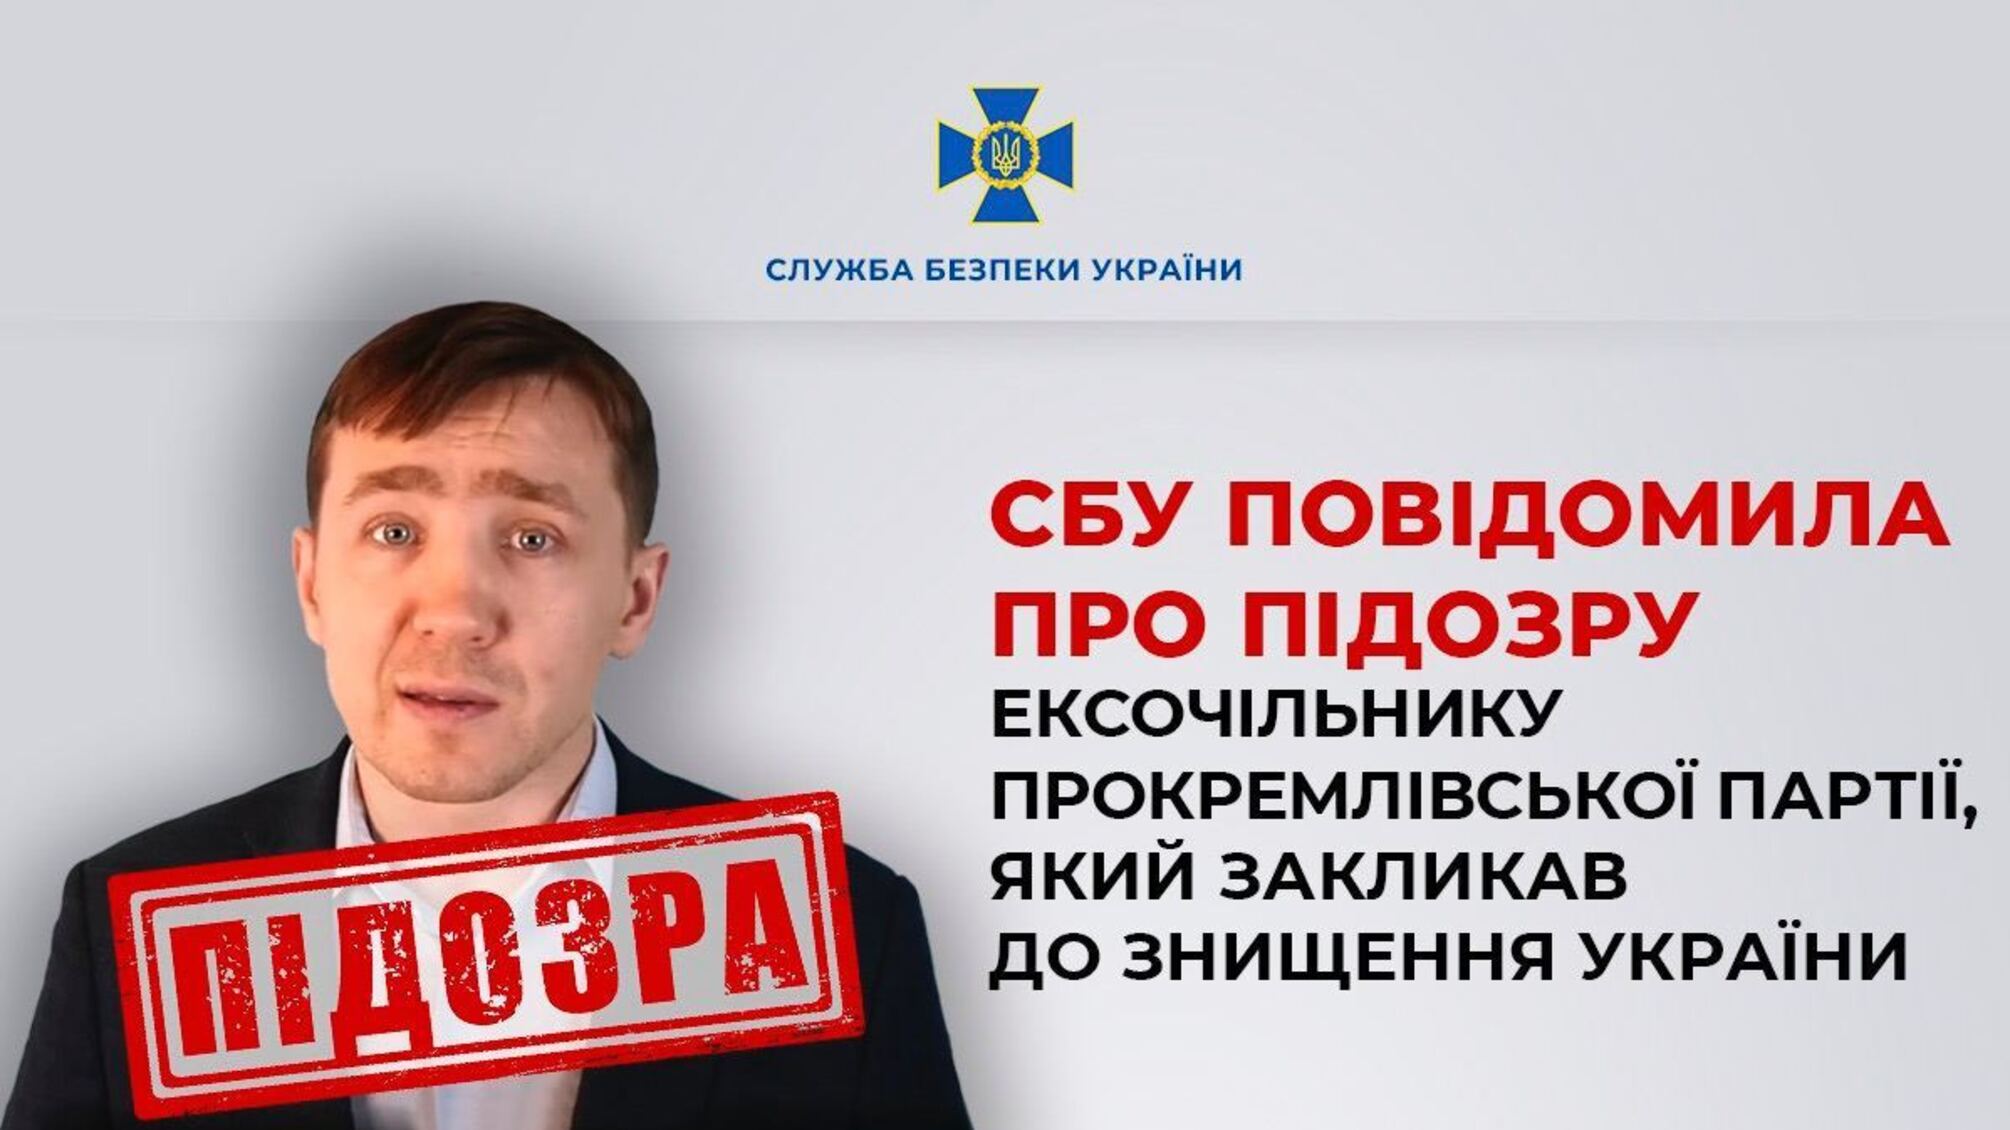 Російський блогер Василець отримав підозру після закликів про захоплення України